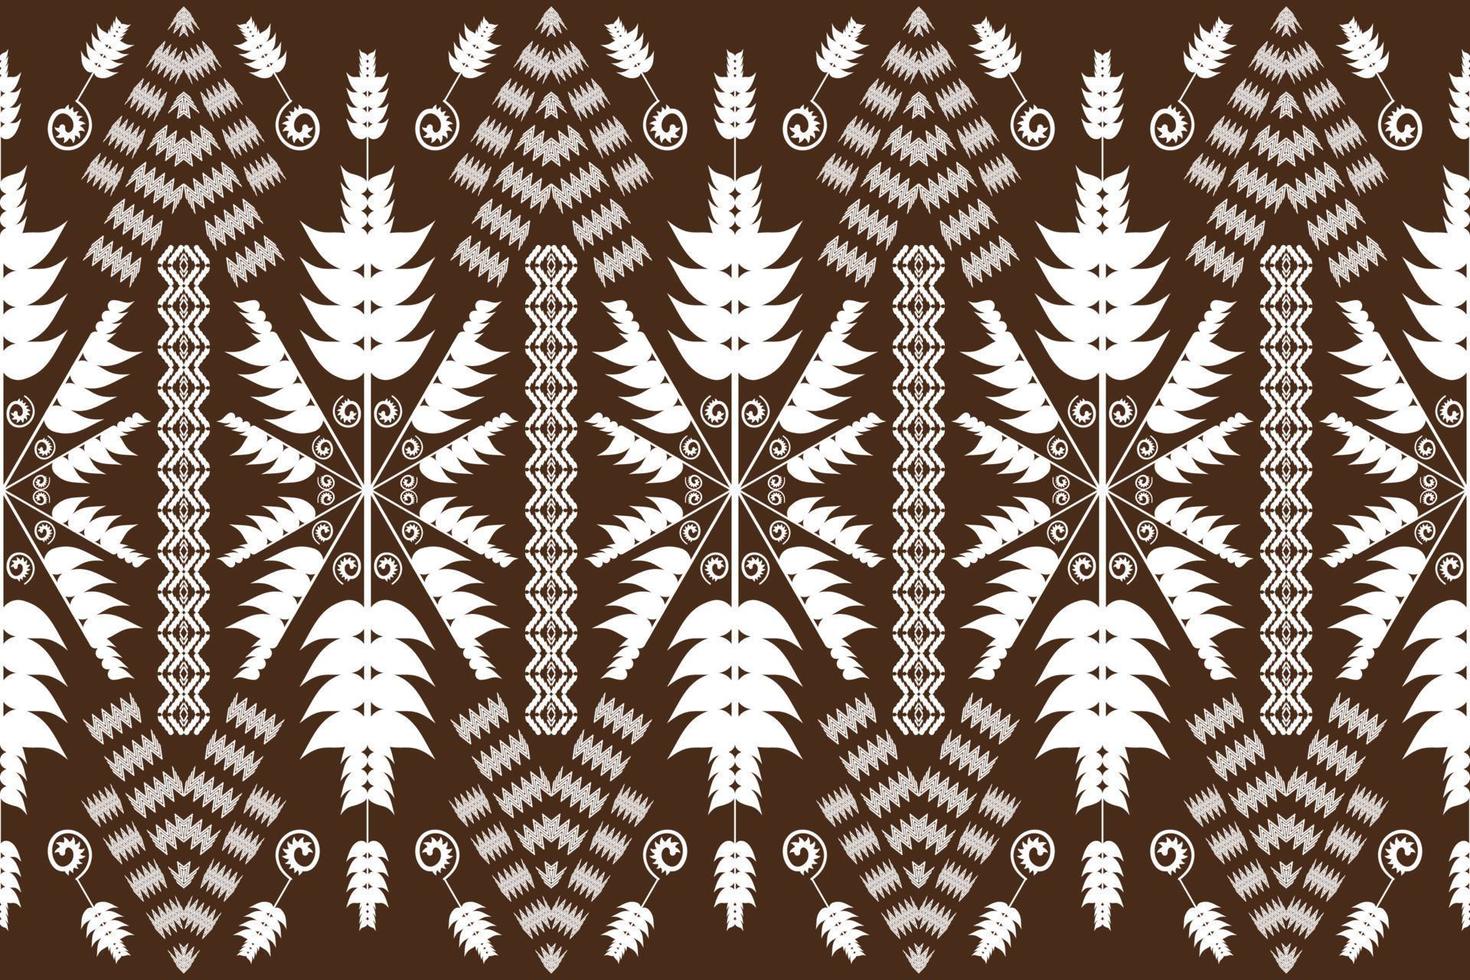 geometriska etniska orientaliska traditionella pattern.figure tribal broderi style.design för bakgrund, tapeter, kläder, omslag, tyg, vektorillustration vektor